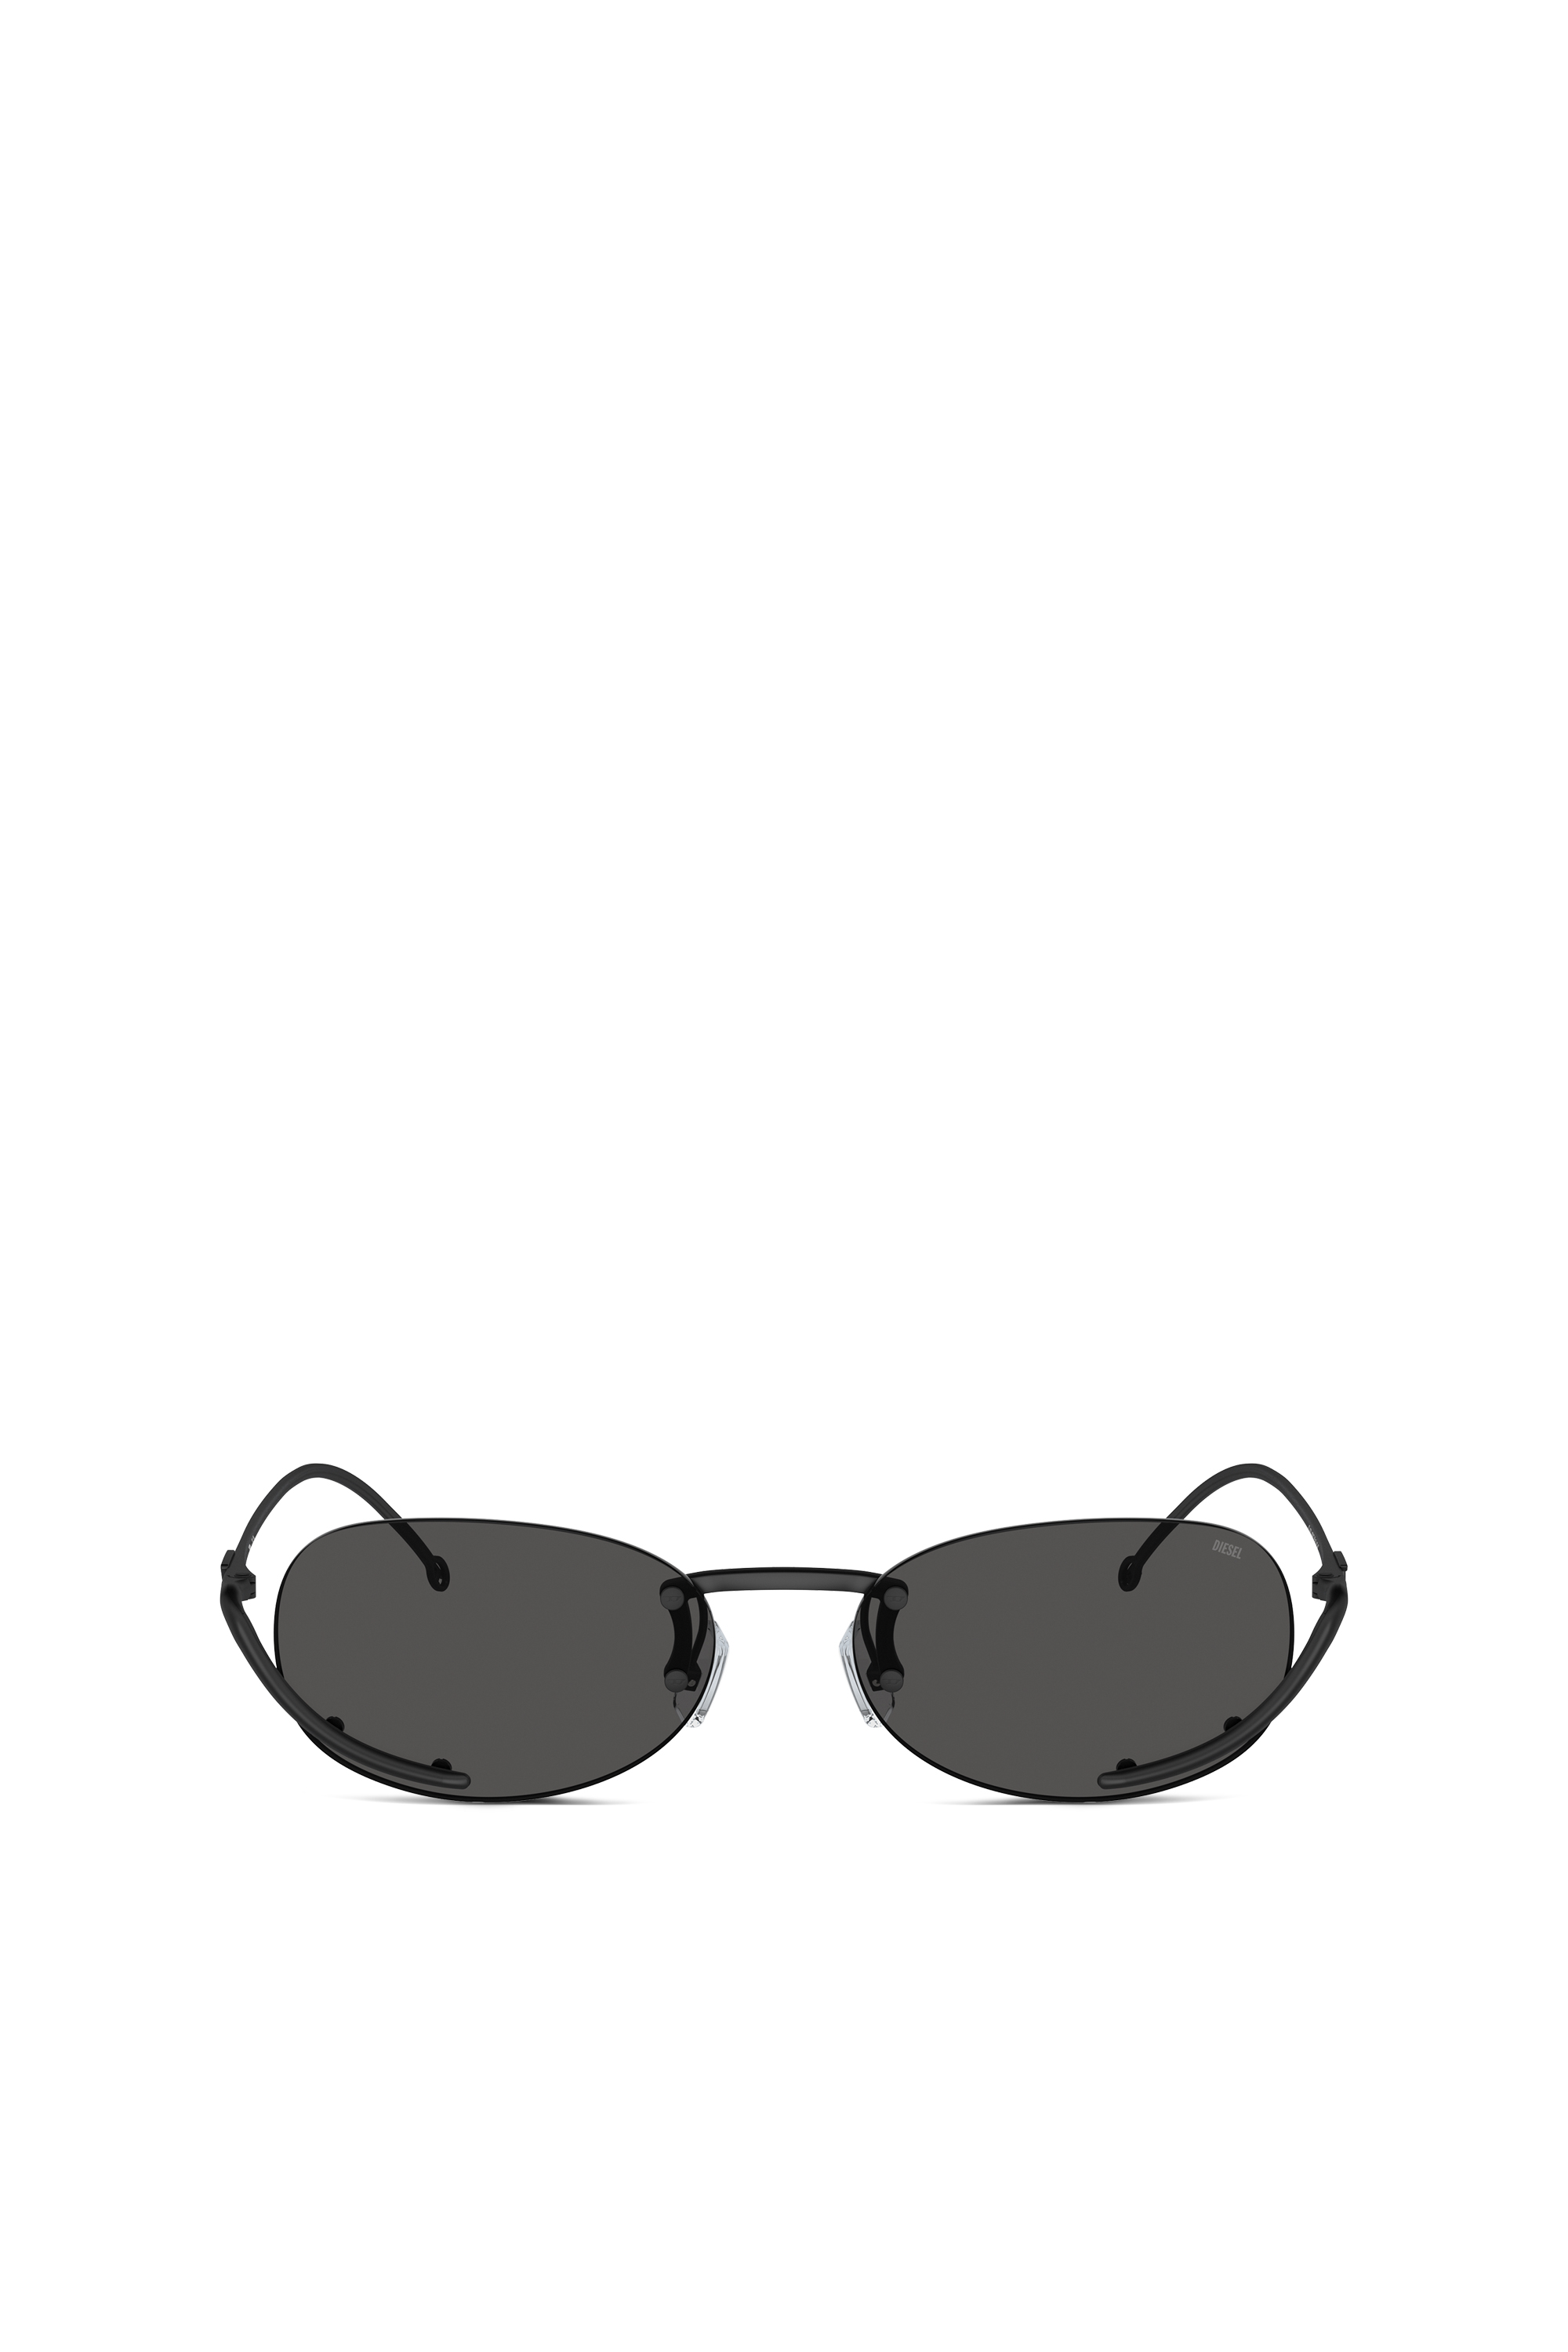 Diesel - Ovaler Modell Brille - Sonnenbrille - Unisex - Schwarz